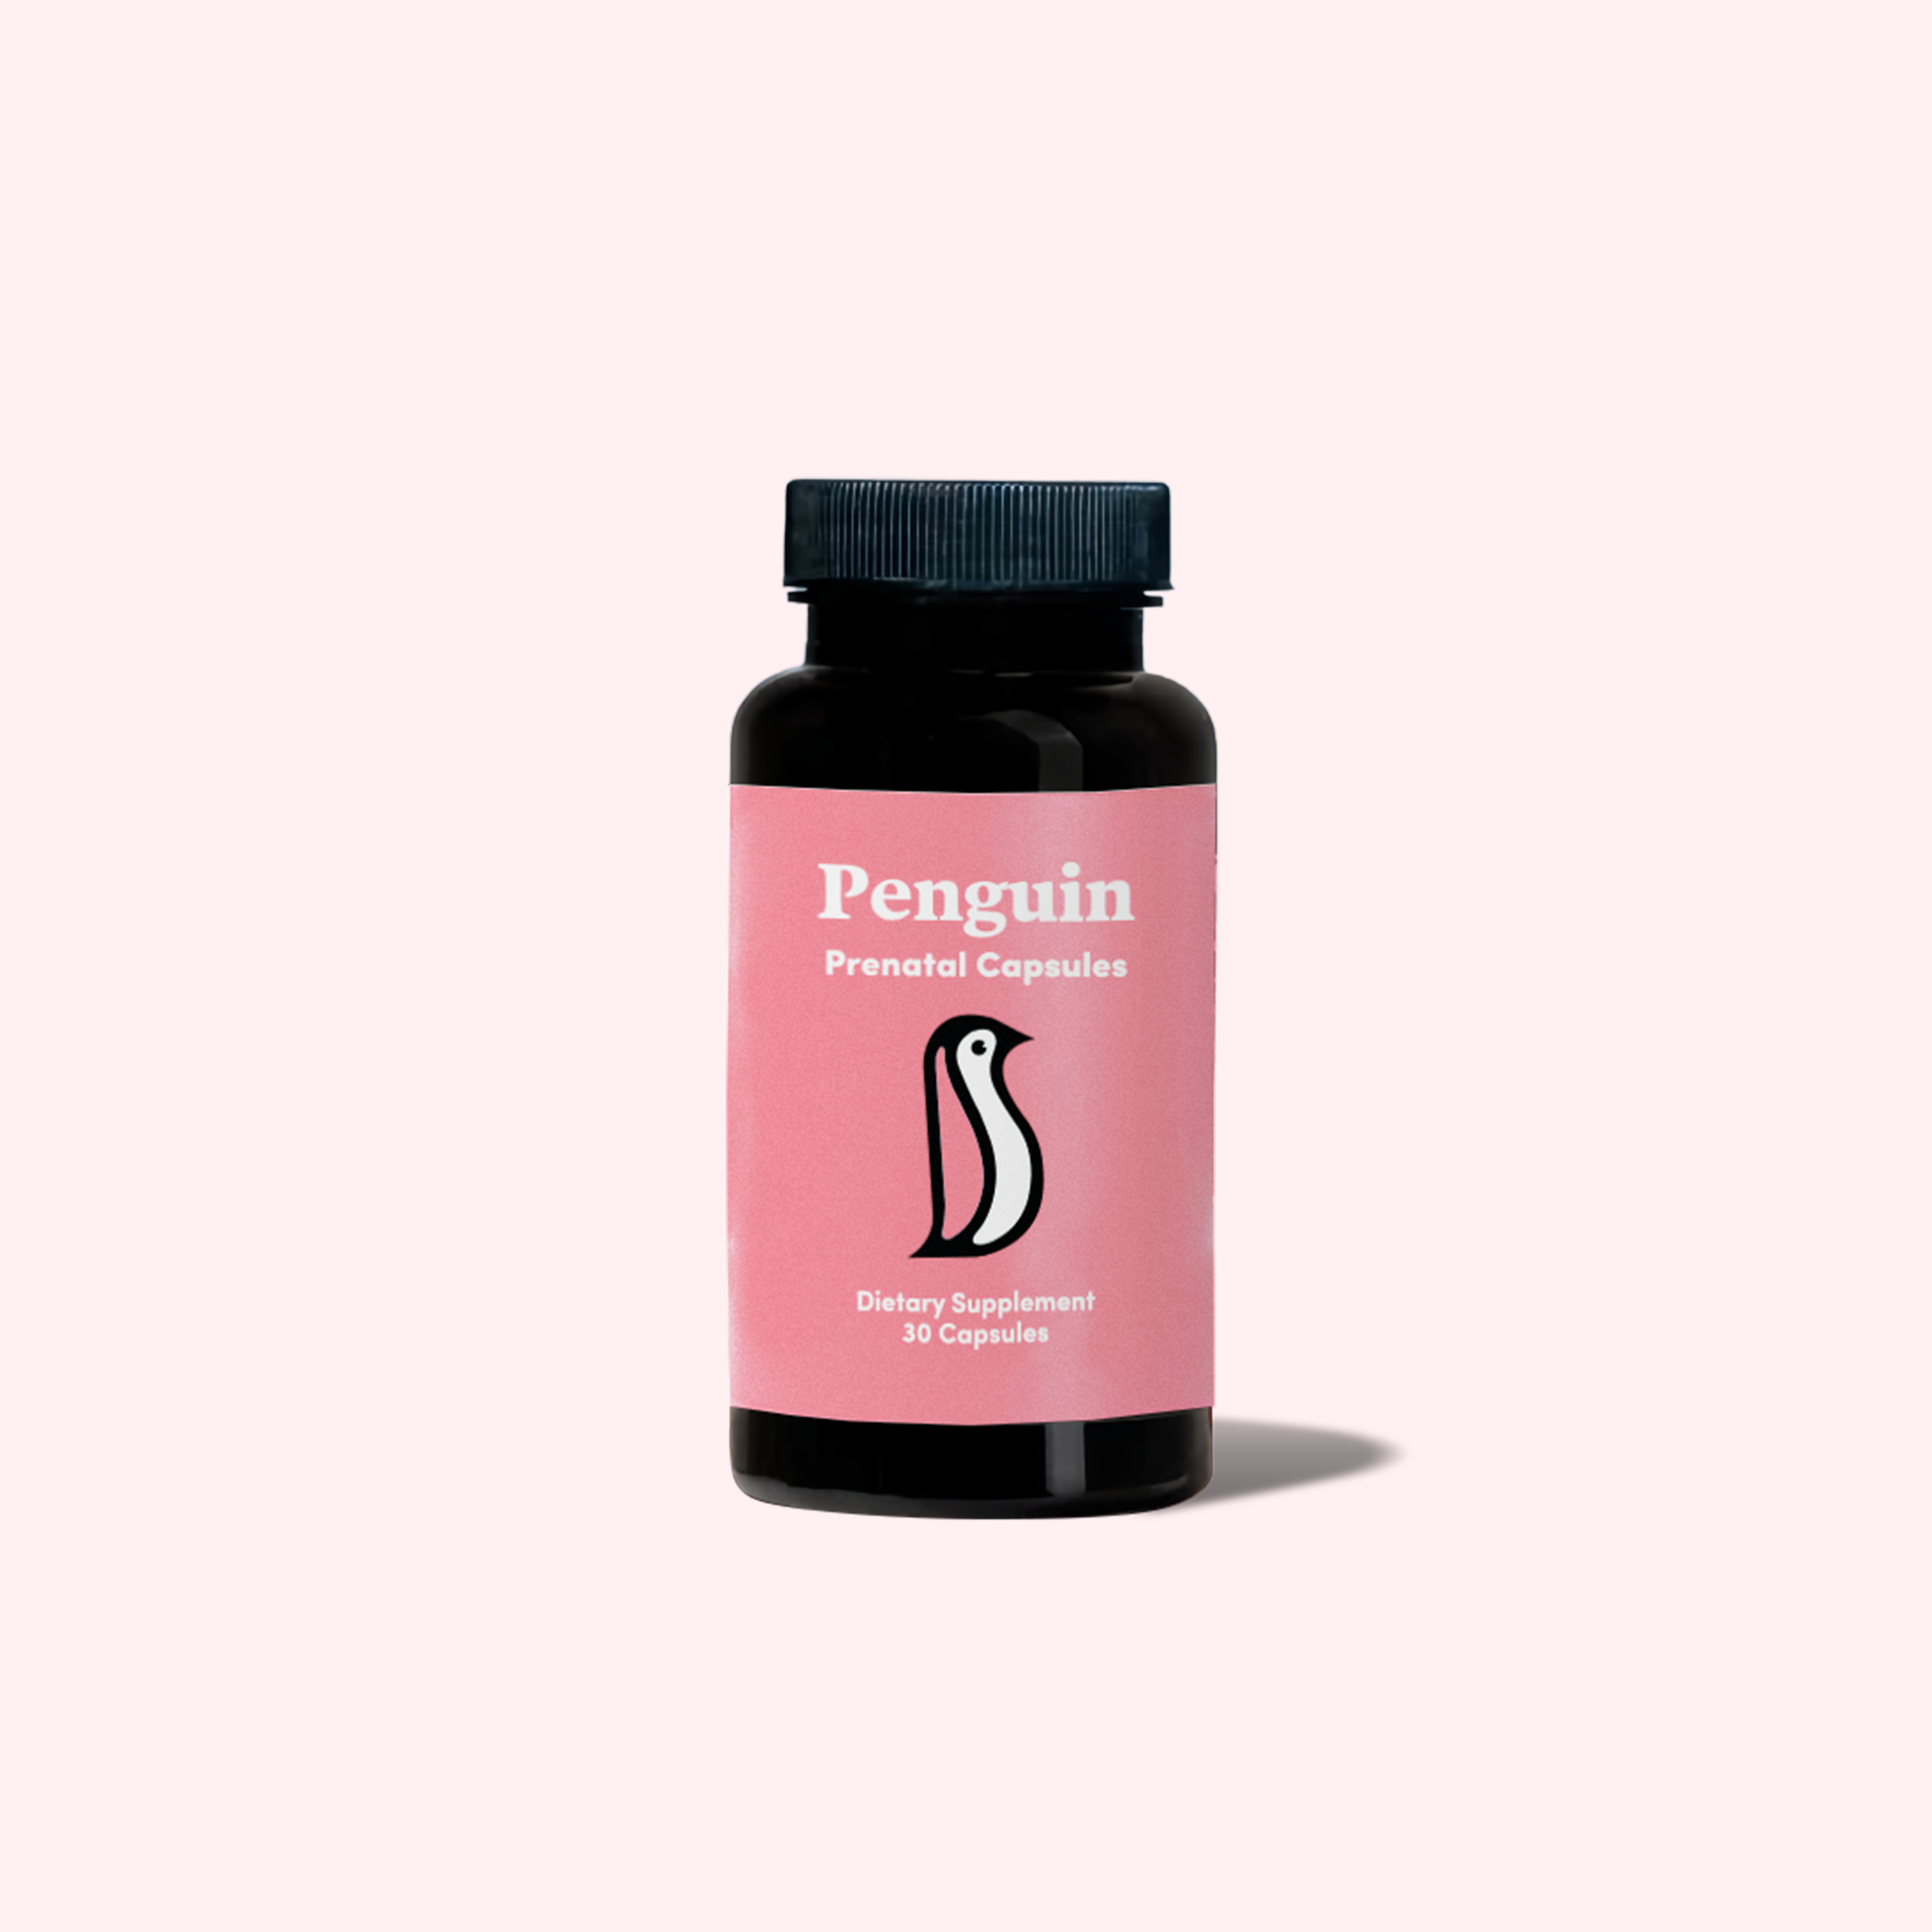 Penguin CBD Prenatal Capsules/Gummies Dietary Supplement Best Price